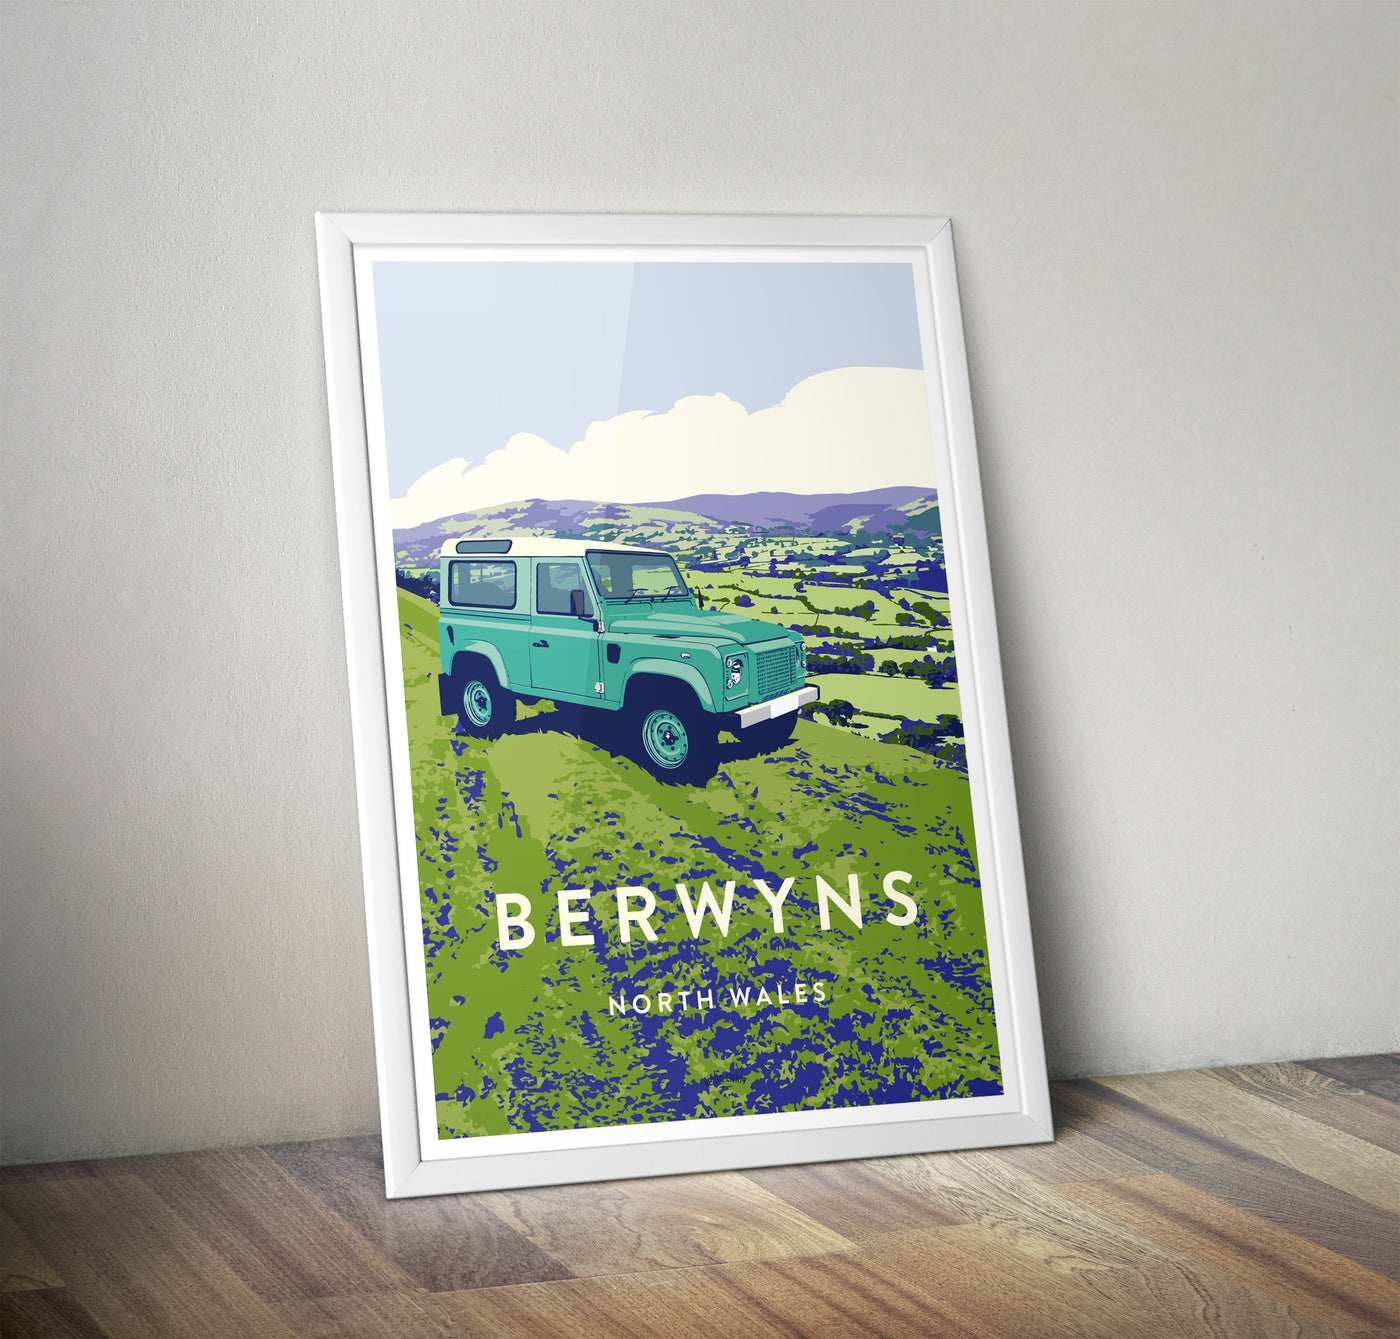 'Berwyns' 90 print